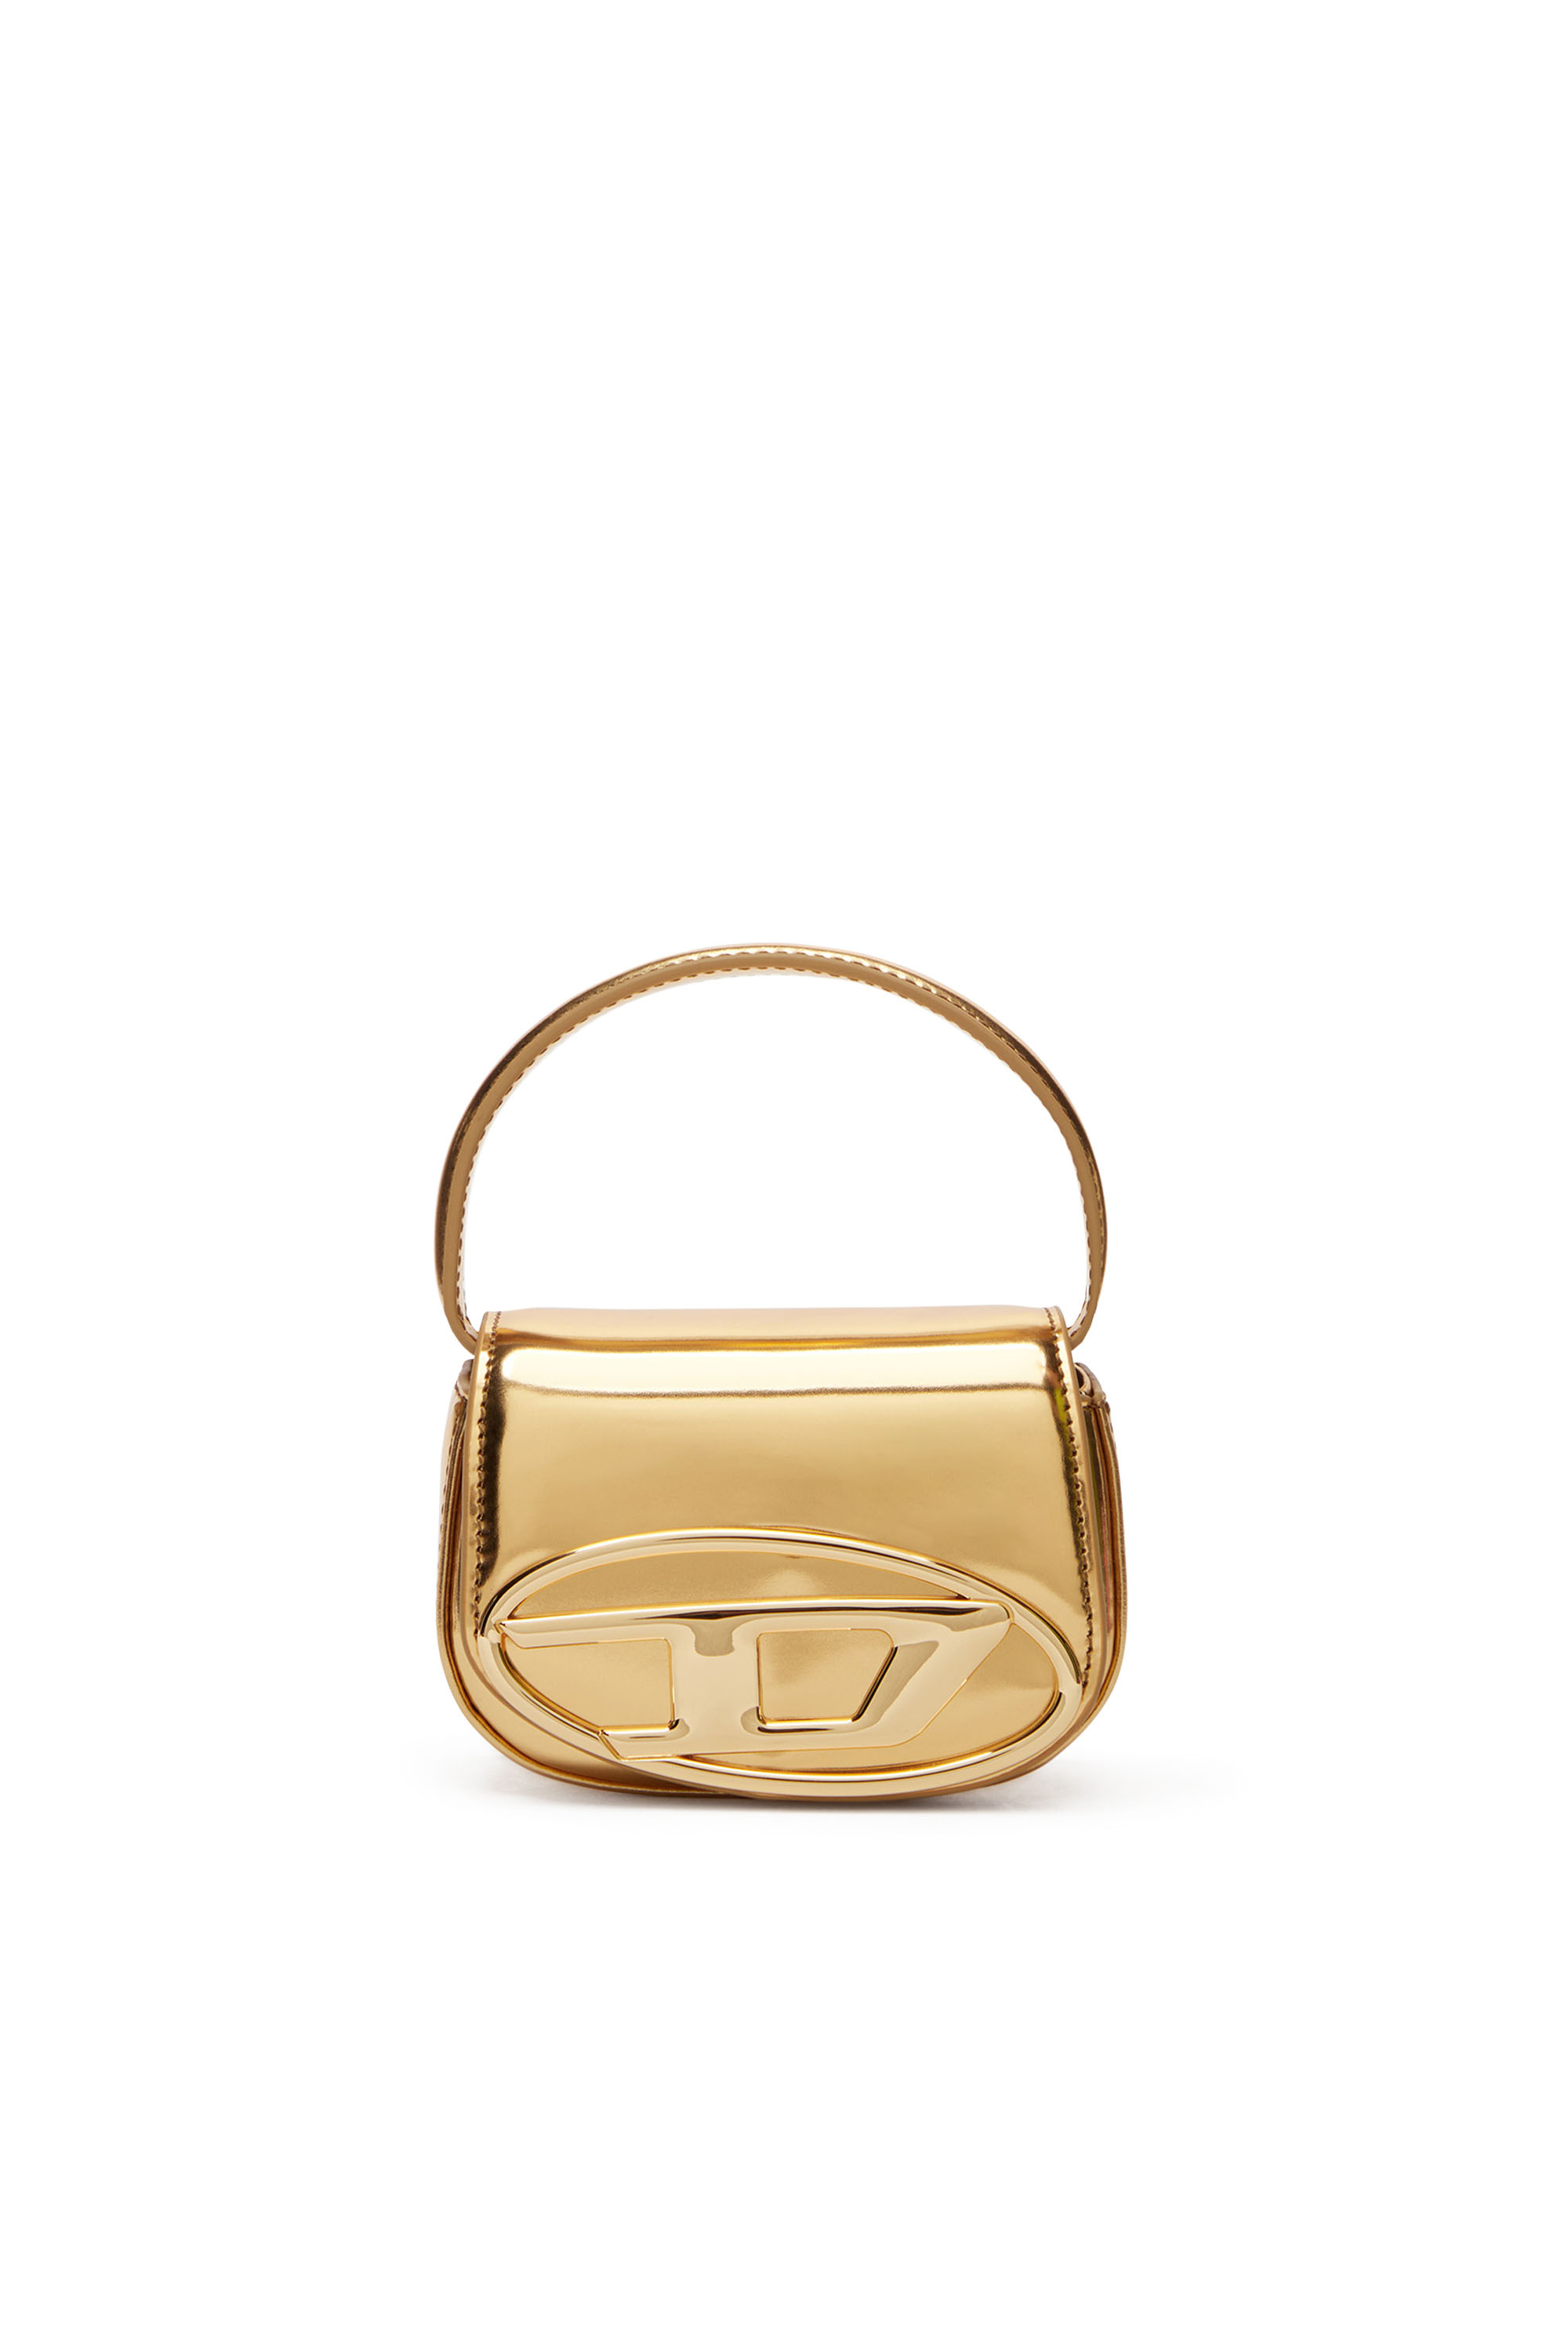 Diesel - 1DR-XS-S - Ikonische Mini-Tasche aus Leder in Spiegeloptik - Handtaschen - Damen - Gold